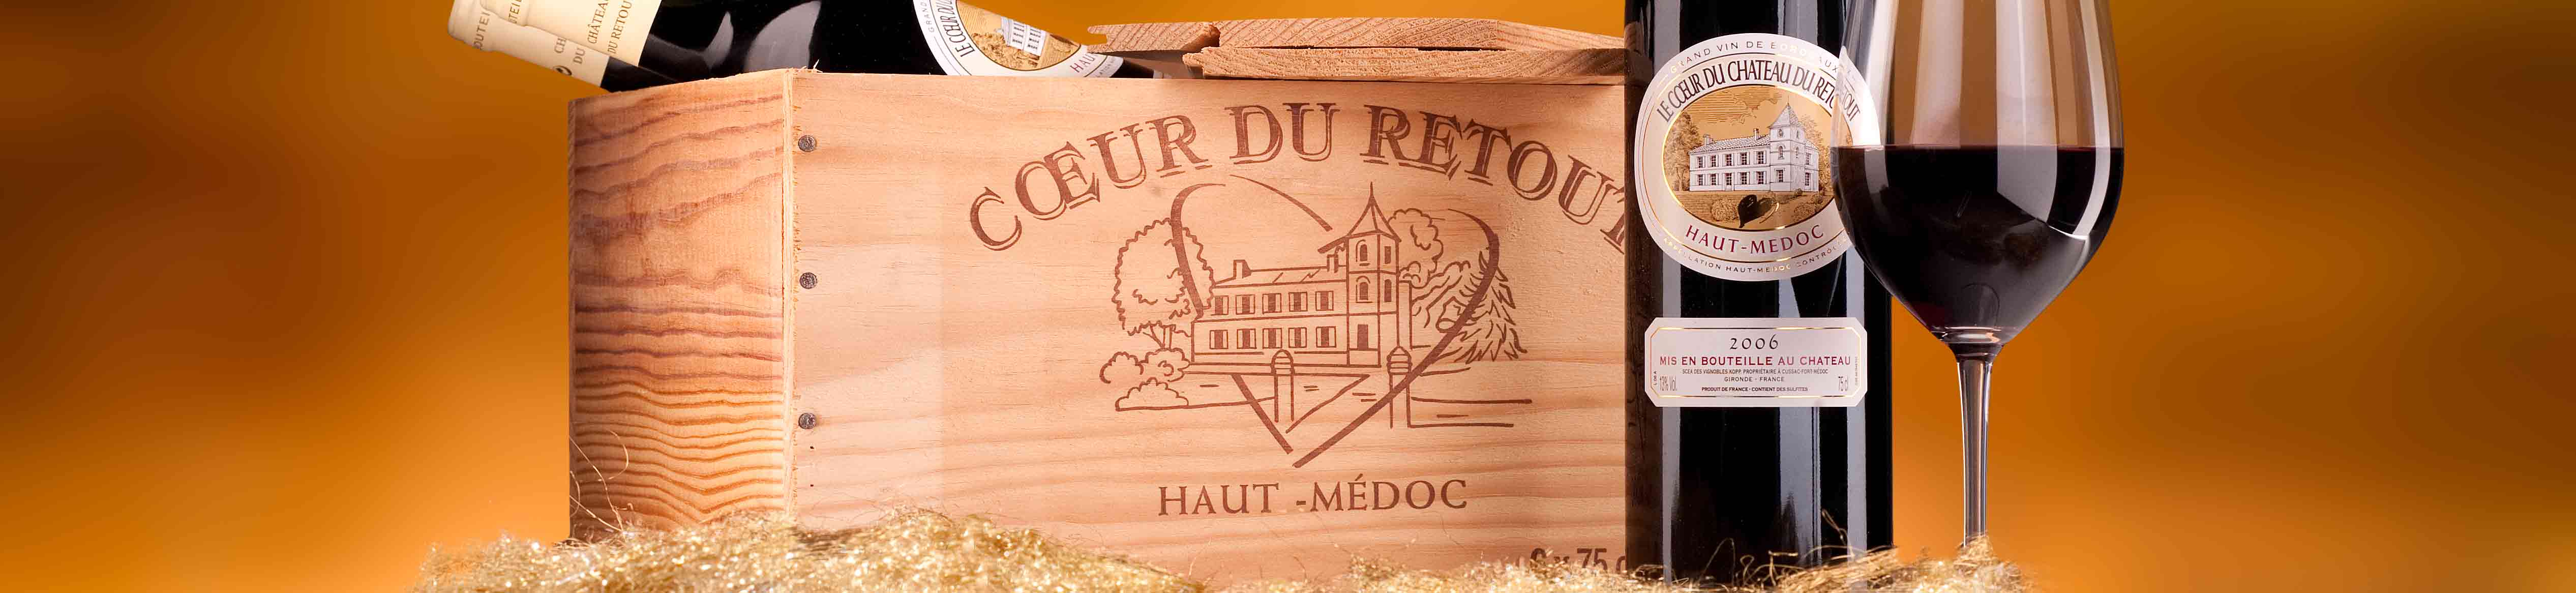 Château du Retout